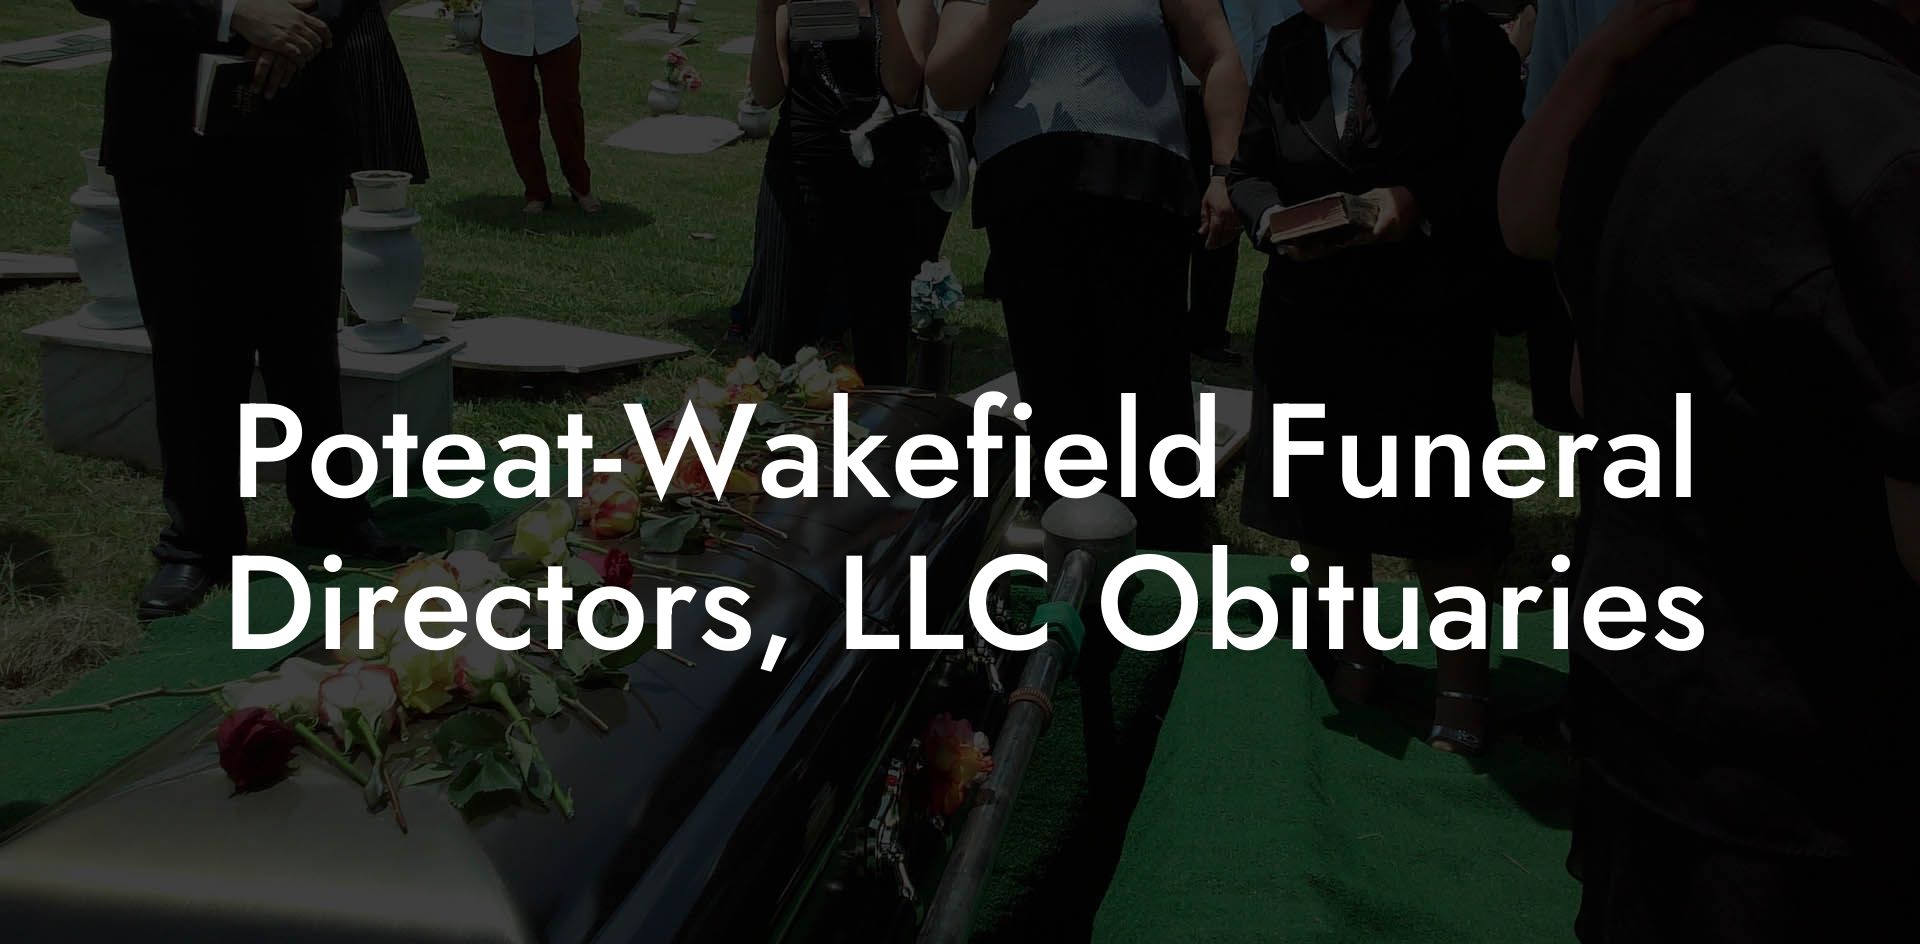 Poteat-Wakefield Funeral Directors, LLC Obituaries